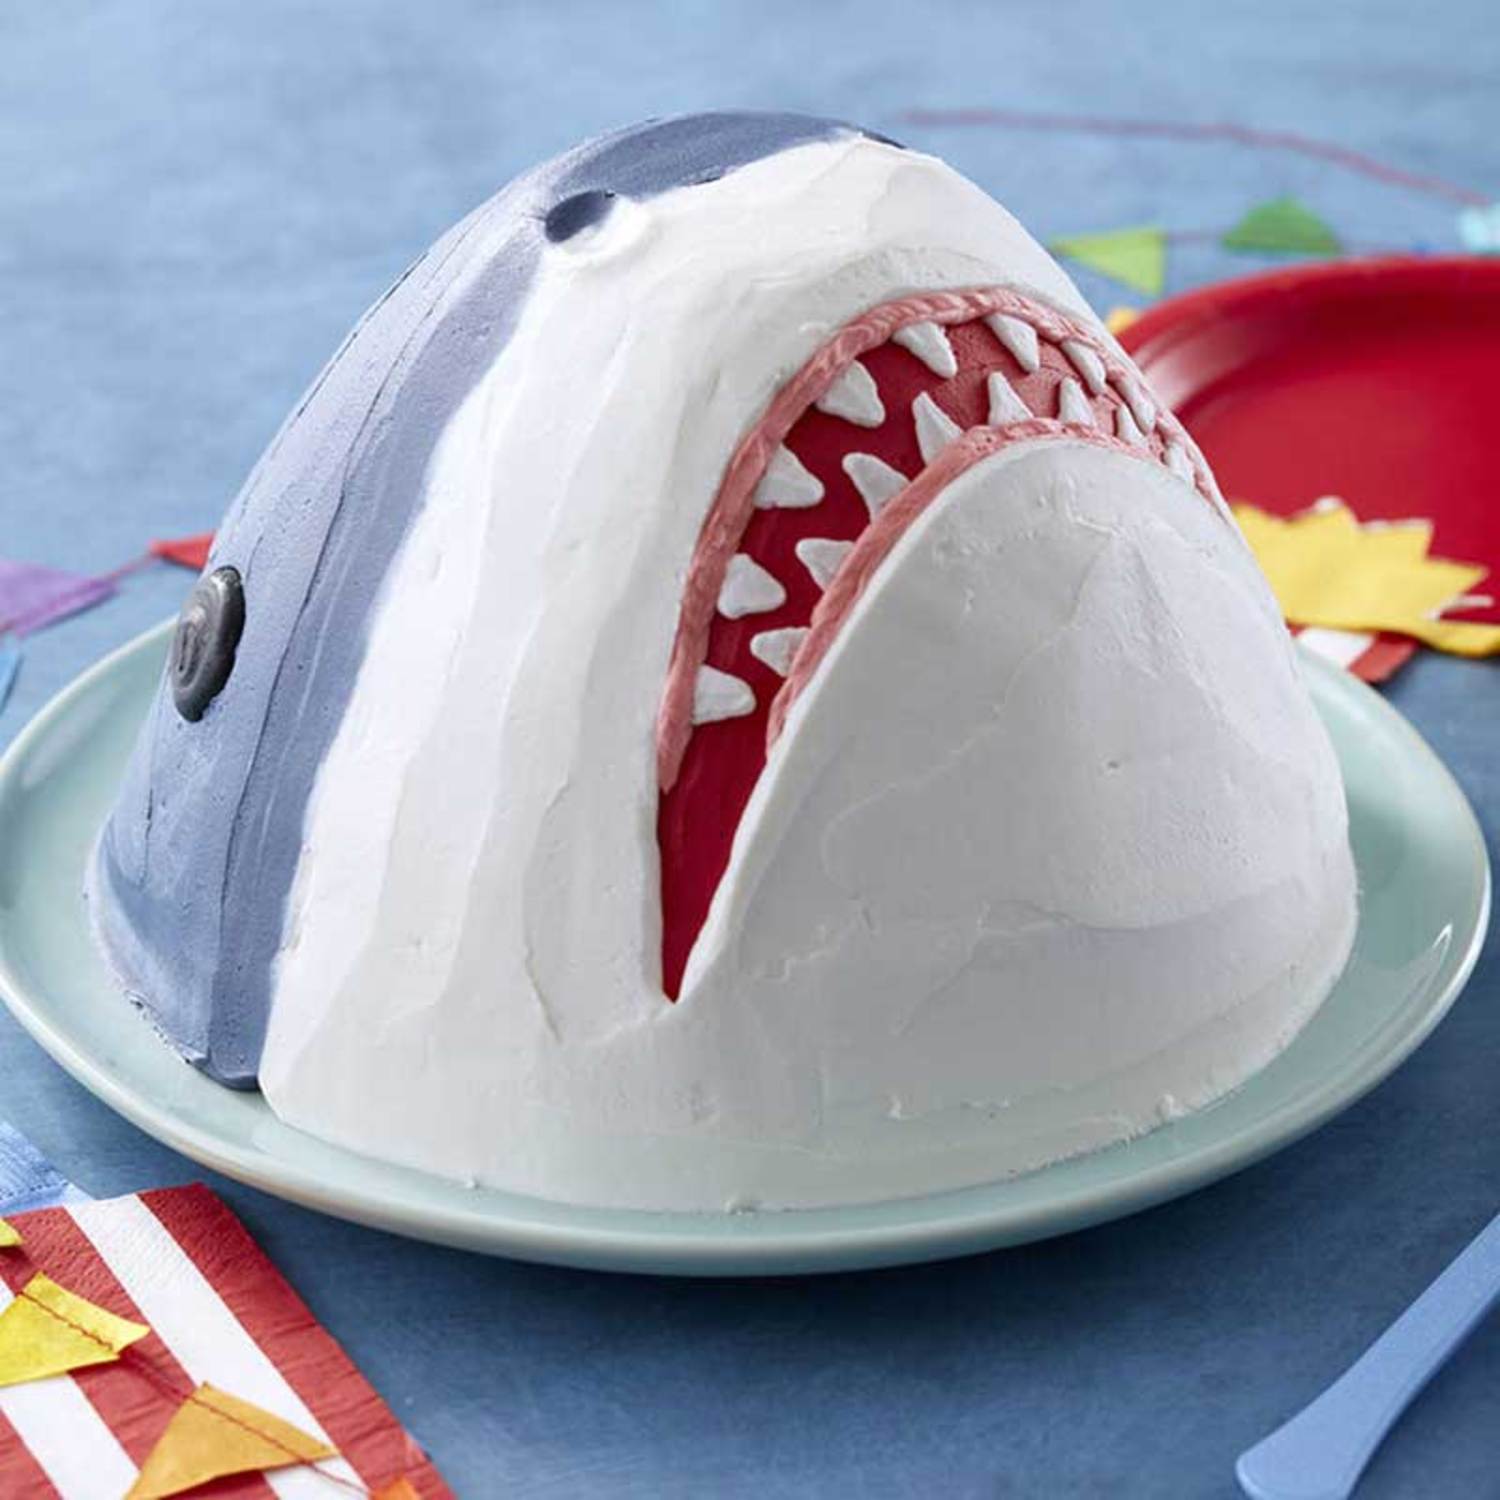 Baby Shark cake. Feed 25 people. – Chefjhoanes